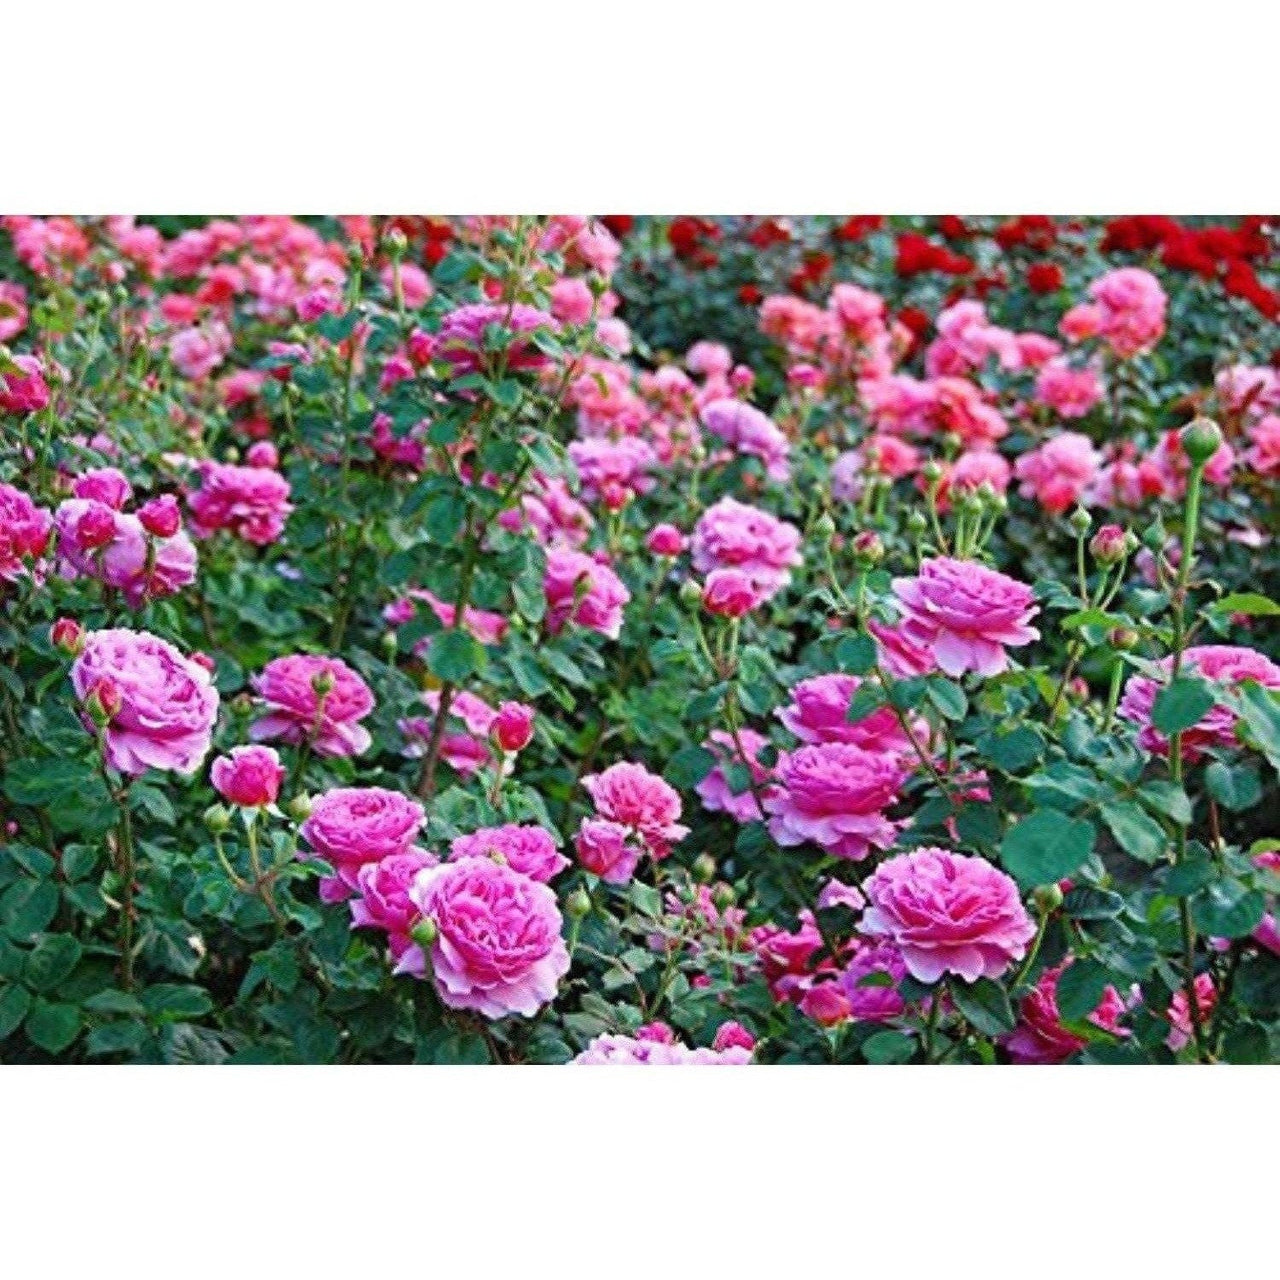 Mesmara Herbal Rose petal powder 75g - Distacart